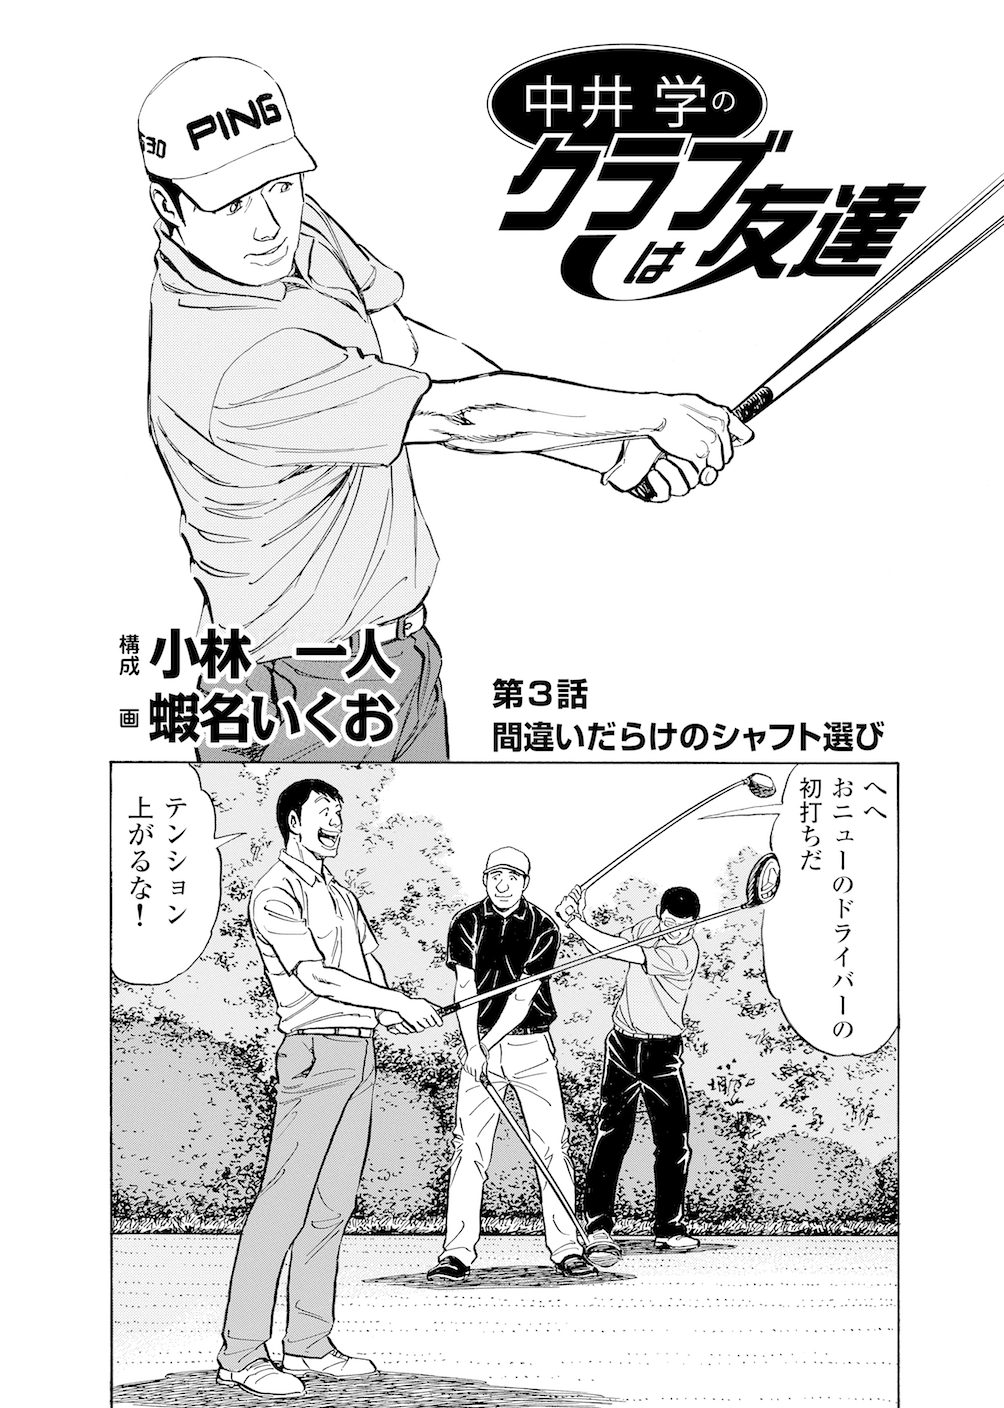 第3話 間違いだらけのシャフト選び 無料で読めるゴルフレッスンコミックweb 日本文芸社